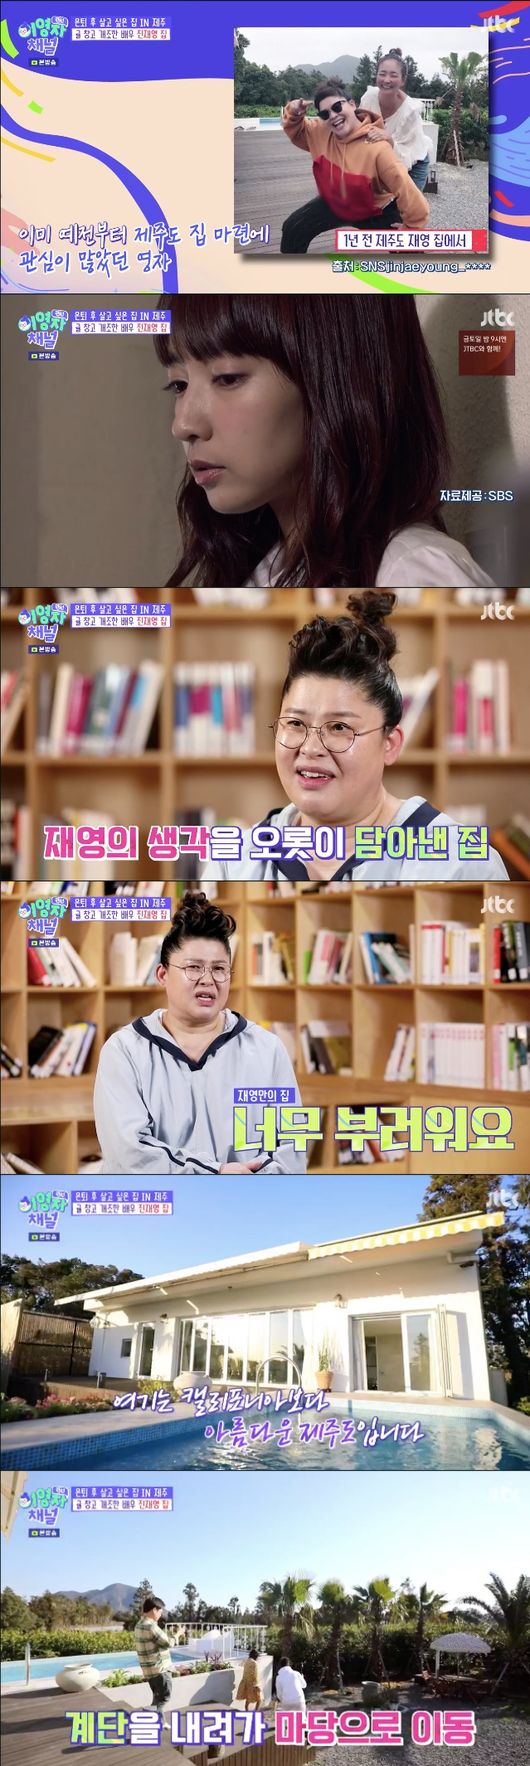 [사진] JTBC '랜선라이프' 이영자 제주도 진재영 집 촬영